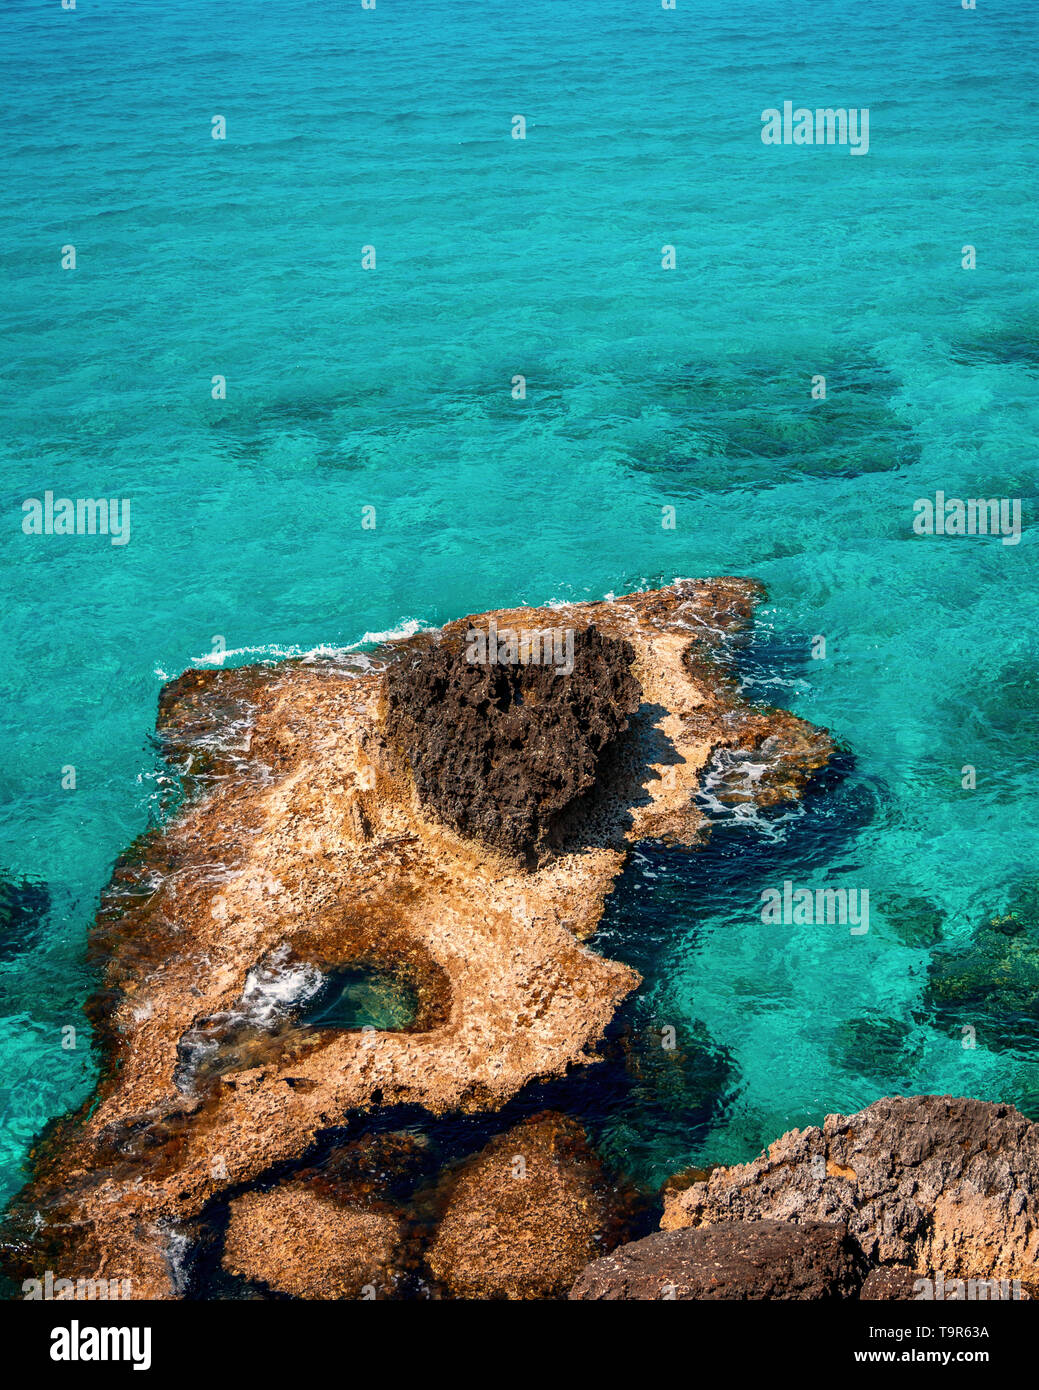 L'assainissement de l'eau turquoise et bleu ciel en Ayia Napa touristique célèbre, Paralimni, Chypre sur une journée ensoleillée avec de superbes formations rocheuses et falaises. Banque D'Images